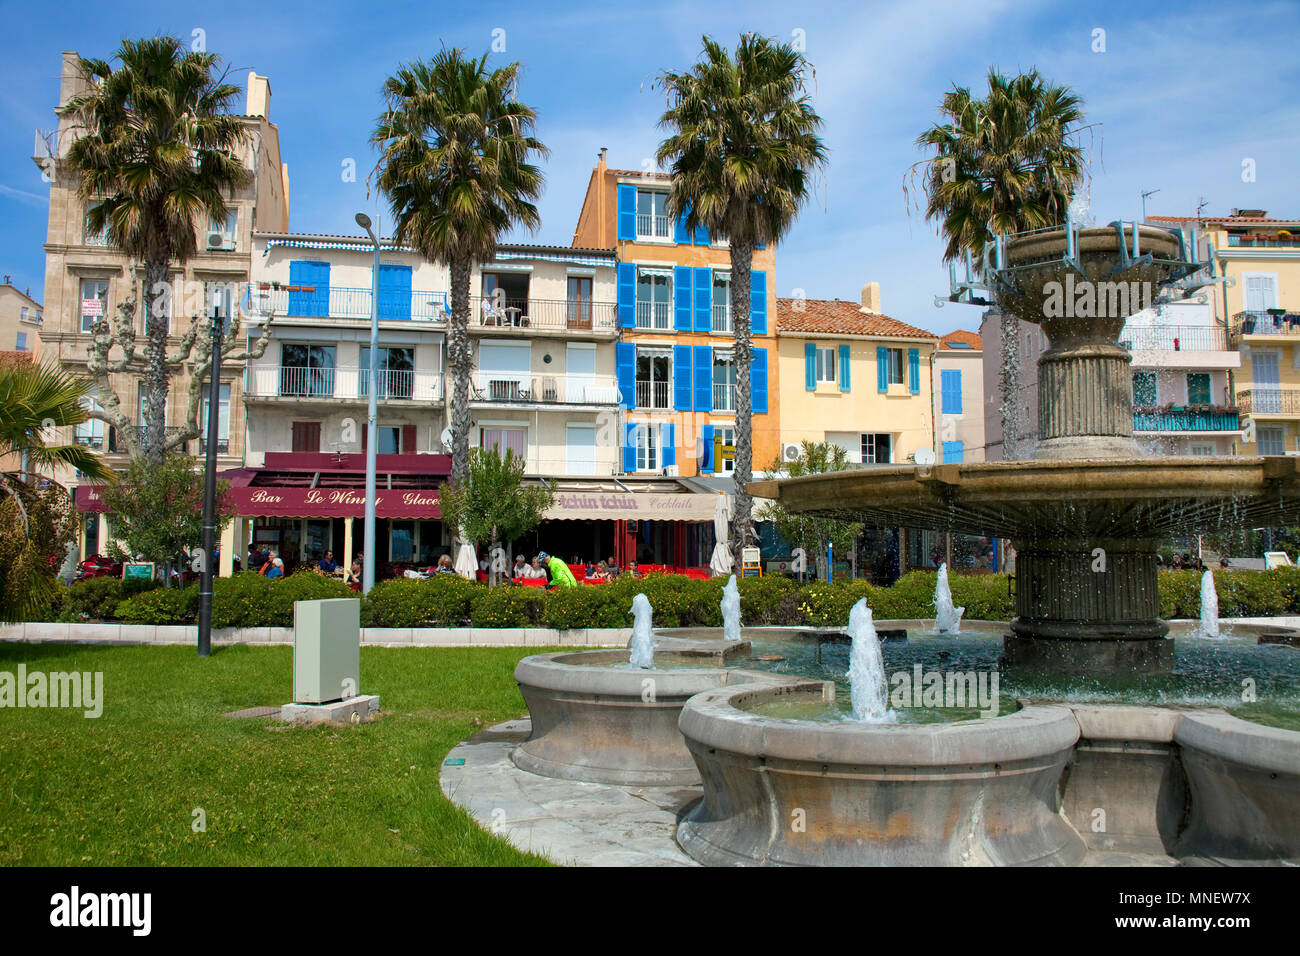 Fountain at promenade of Bandol, Cote d'Azur, Département Var, Provence-Alpes-Côte d’Azur, South France, France, Europe Stock Photo